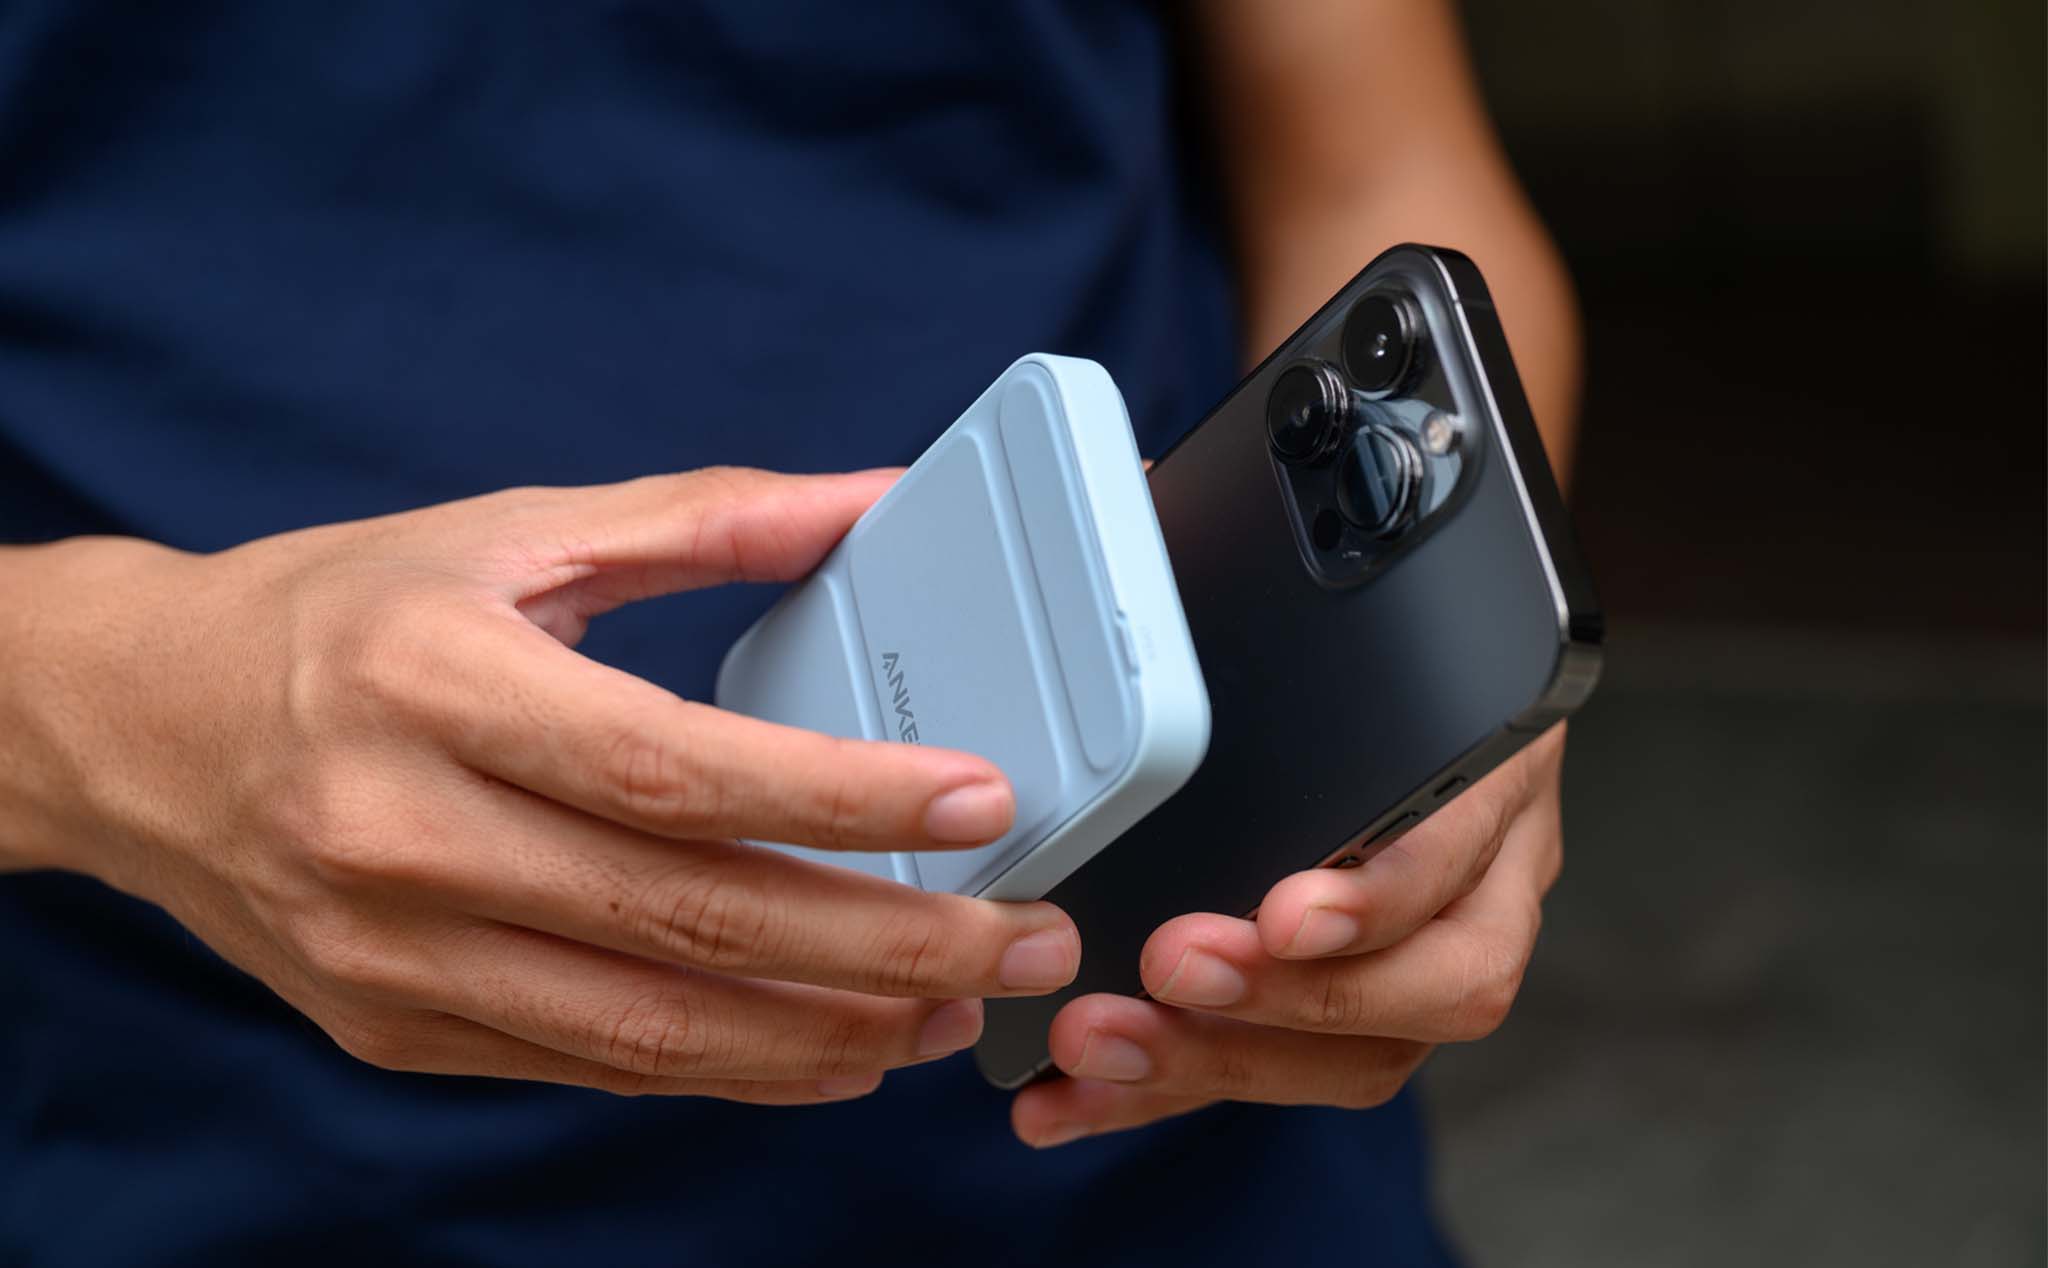 Trên tay pin Anker MagGo cho iPhone: thiết kế hấp dẫn, không hỗ trợ MagSafe